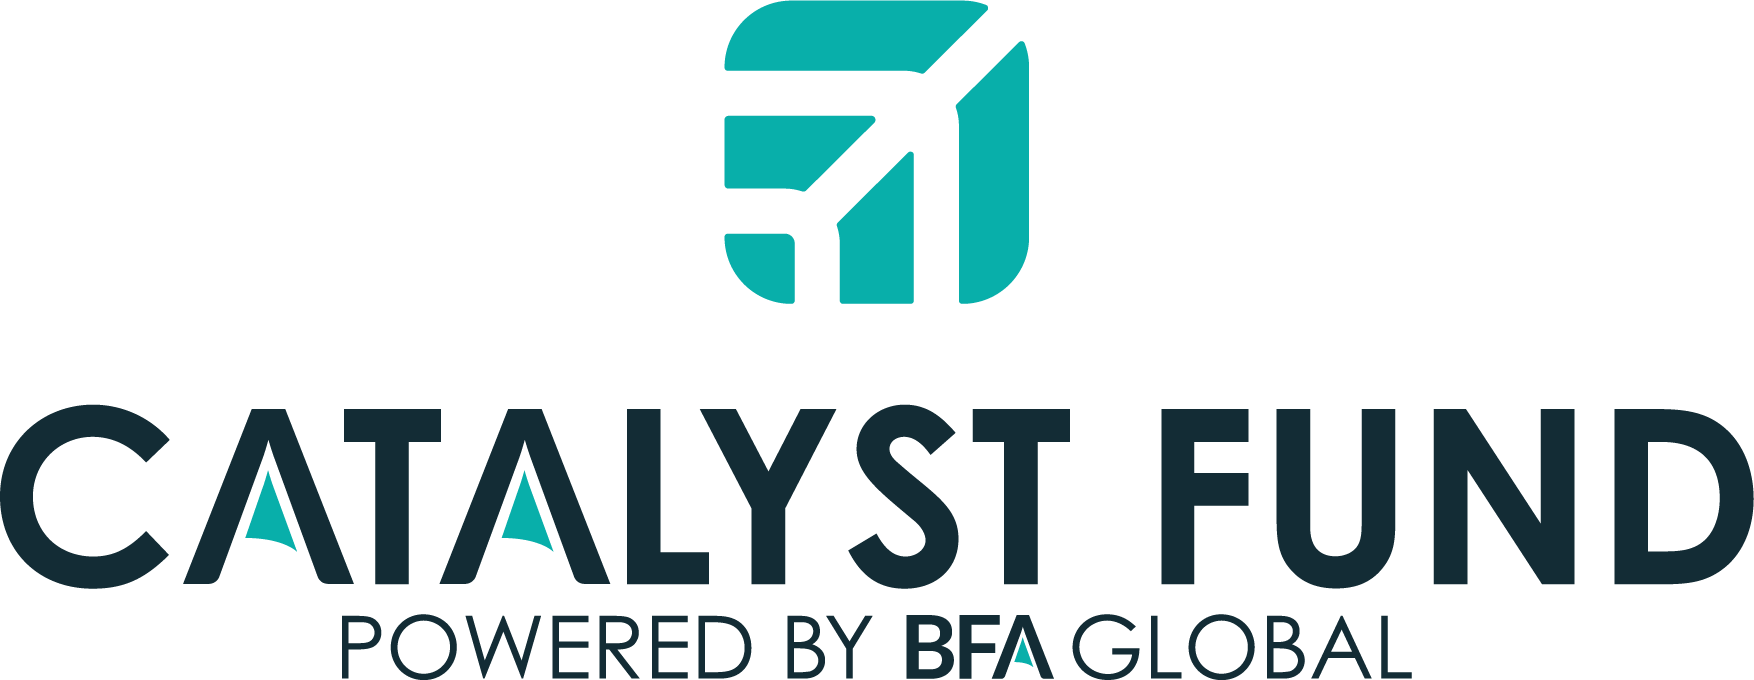 Catalyst Fund logo